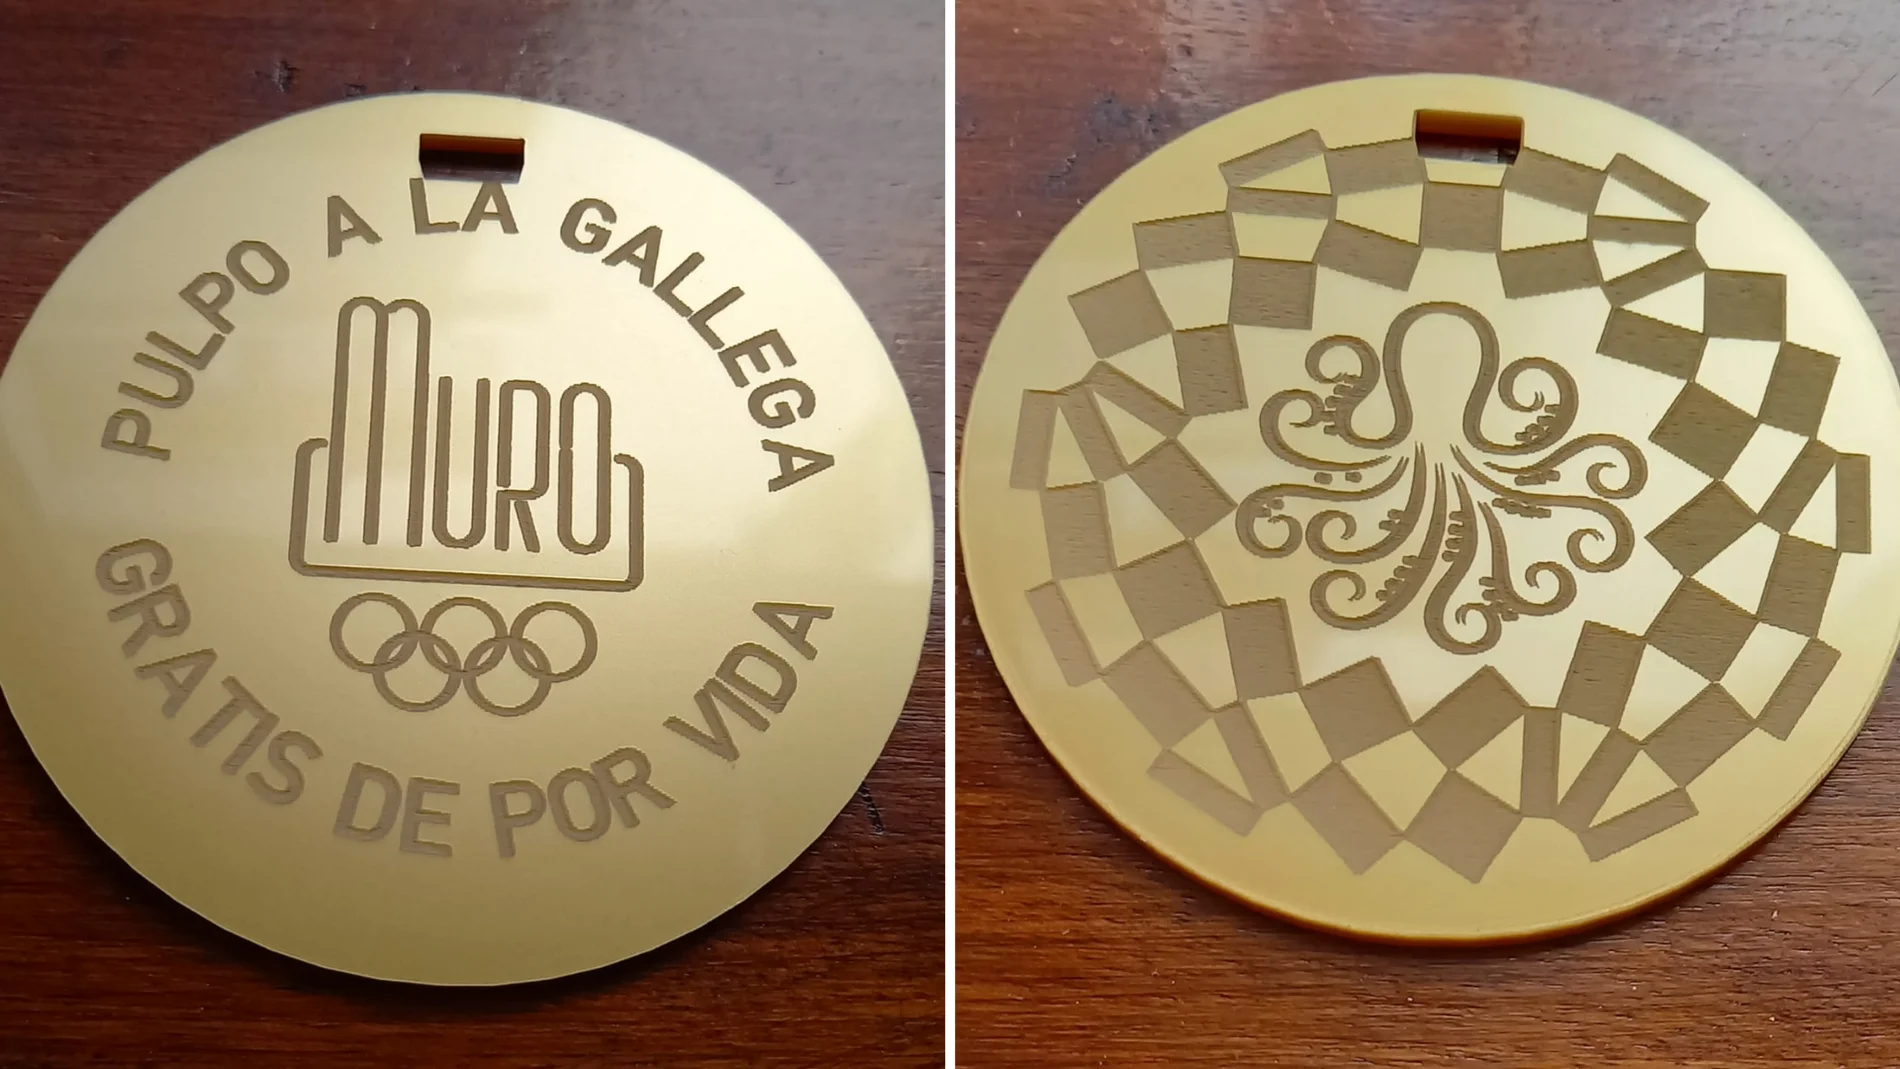 Un bar de Lugo ofrece pulpo gratis de por vida para los olímpicos gallegos